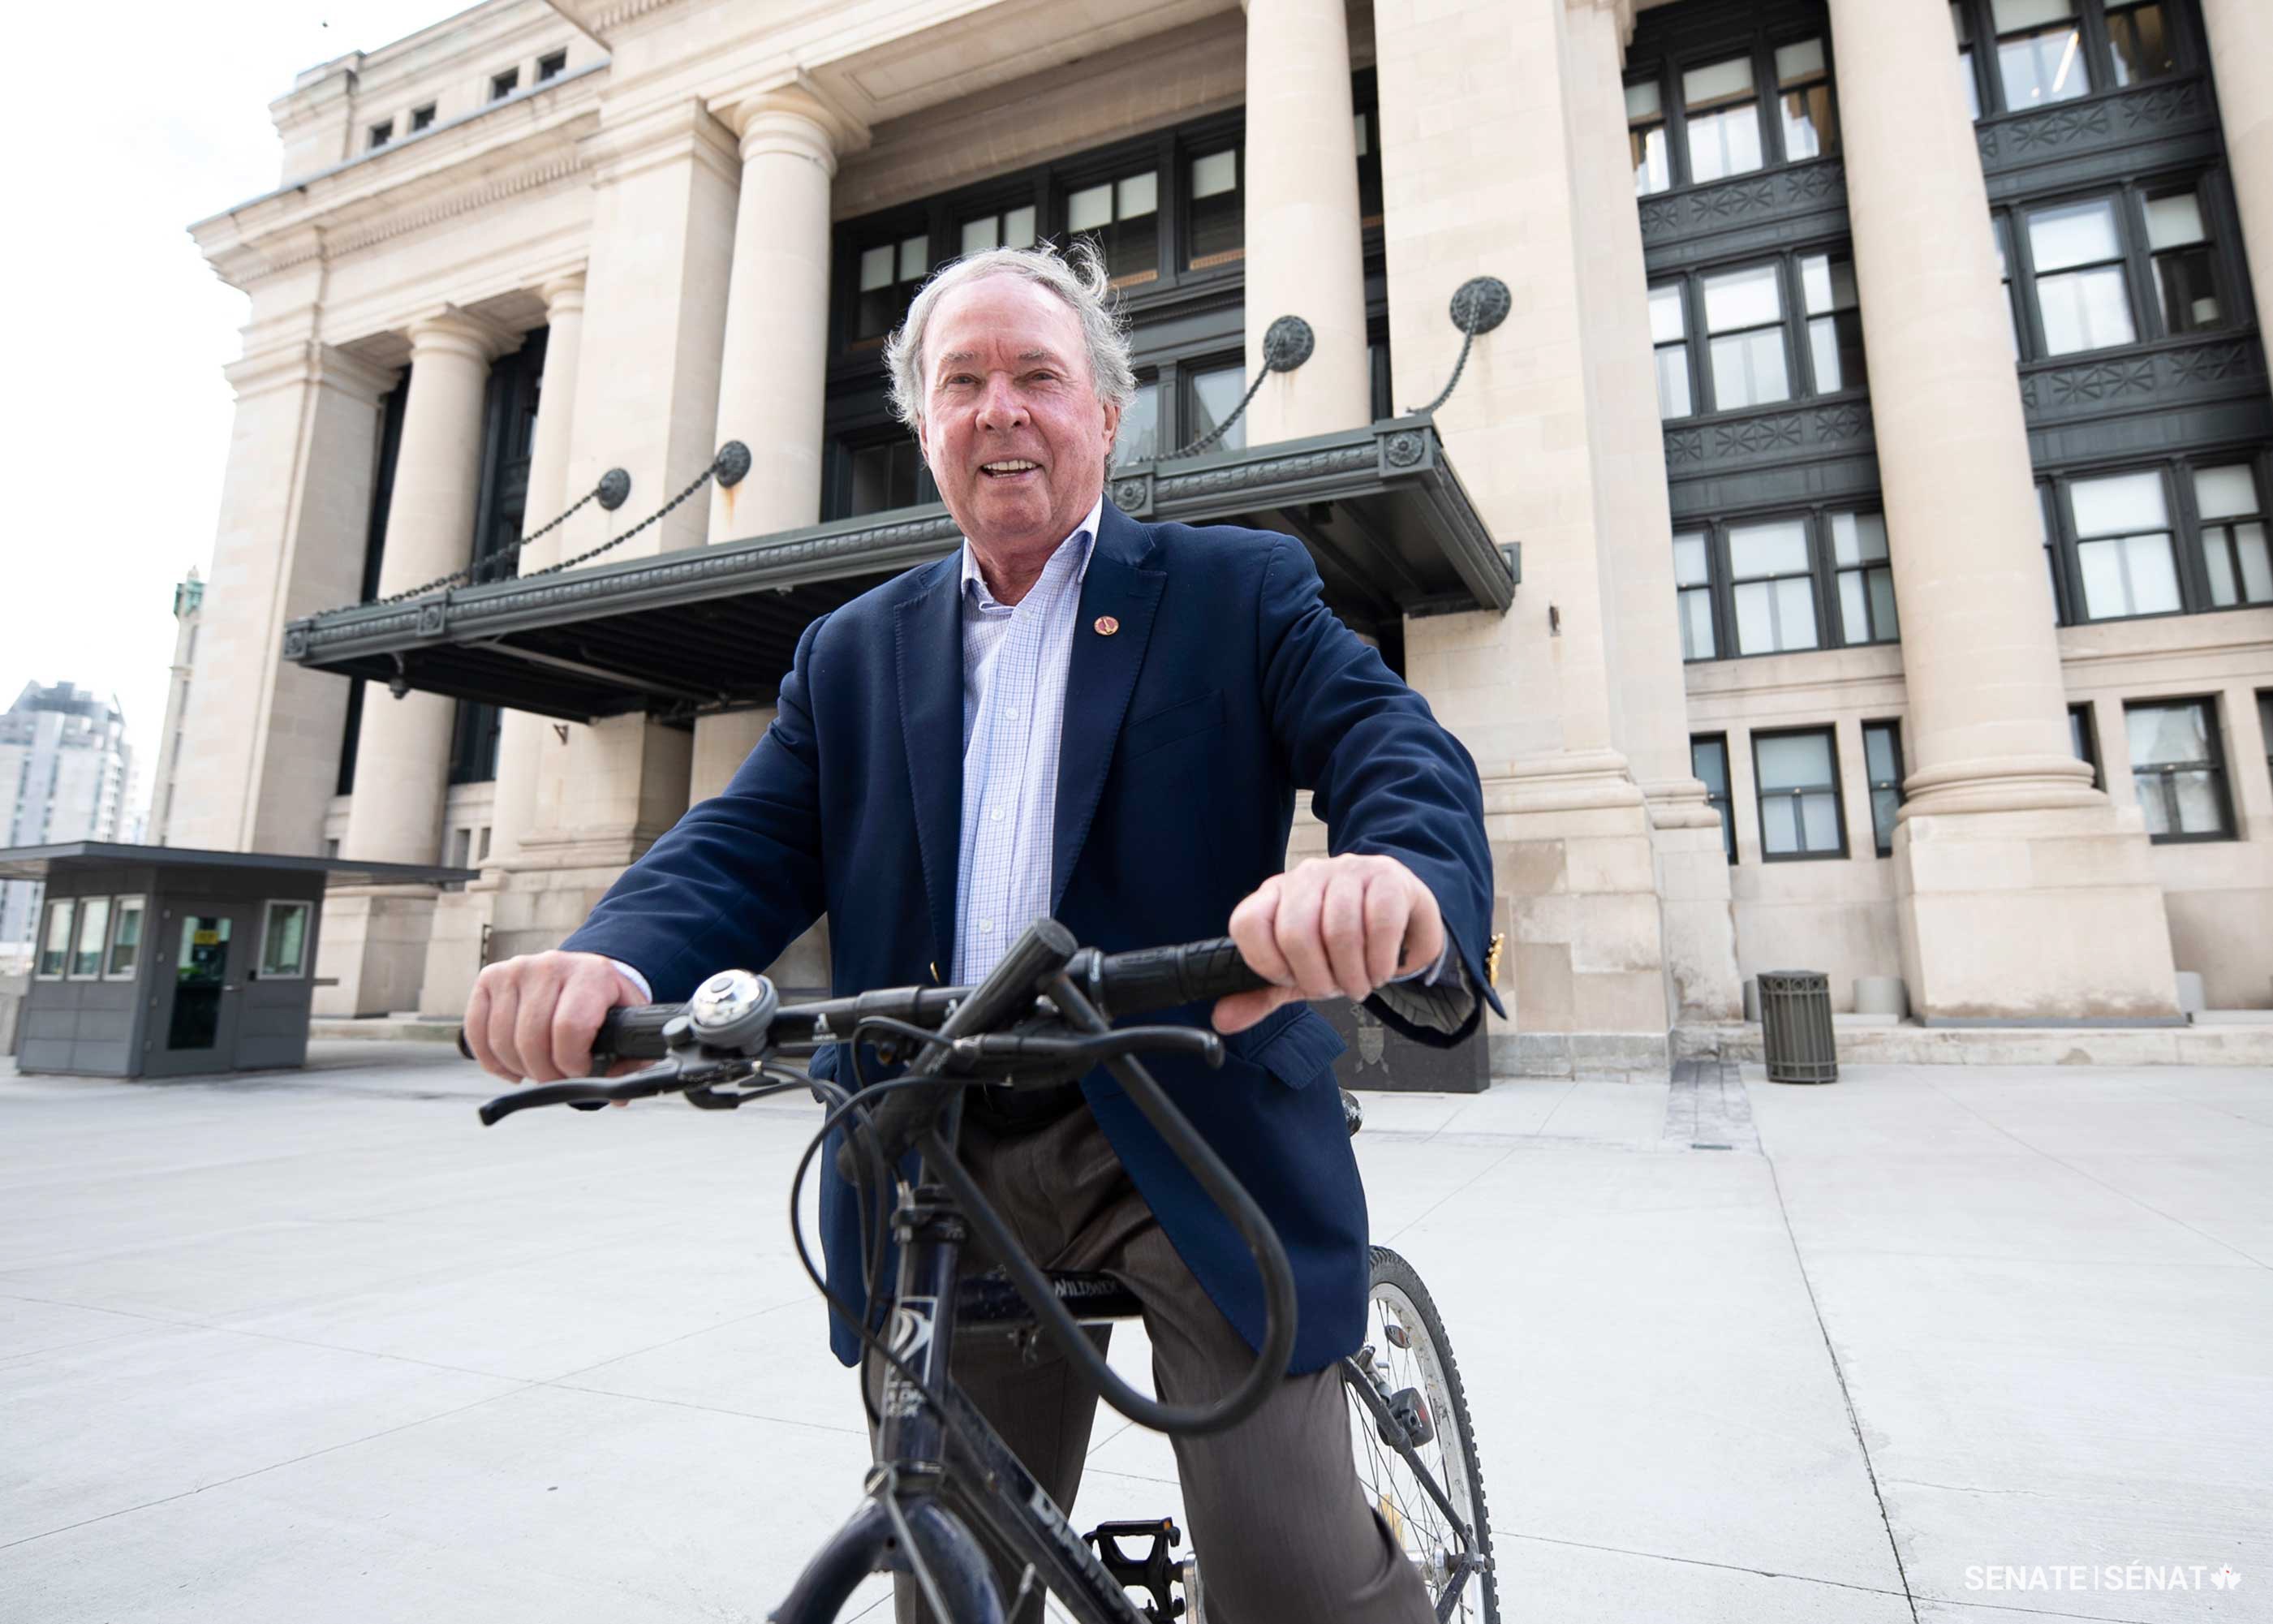 Le sénateur Munson, qui représente Ottawa et le canal Rideau au Sénat, se rend souvent au travail à vélo en longeant le cours d’eau.